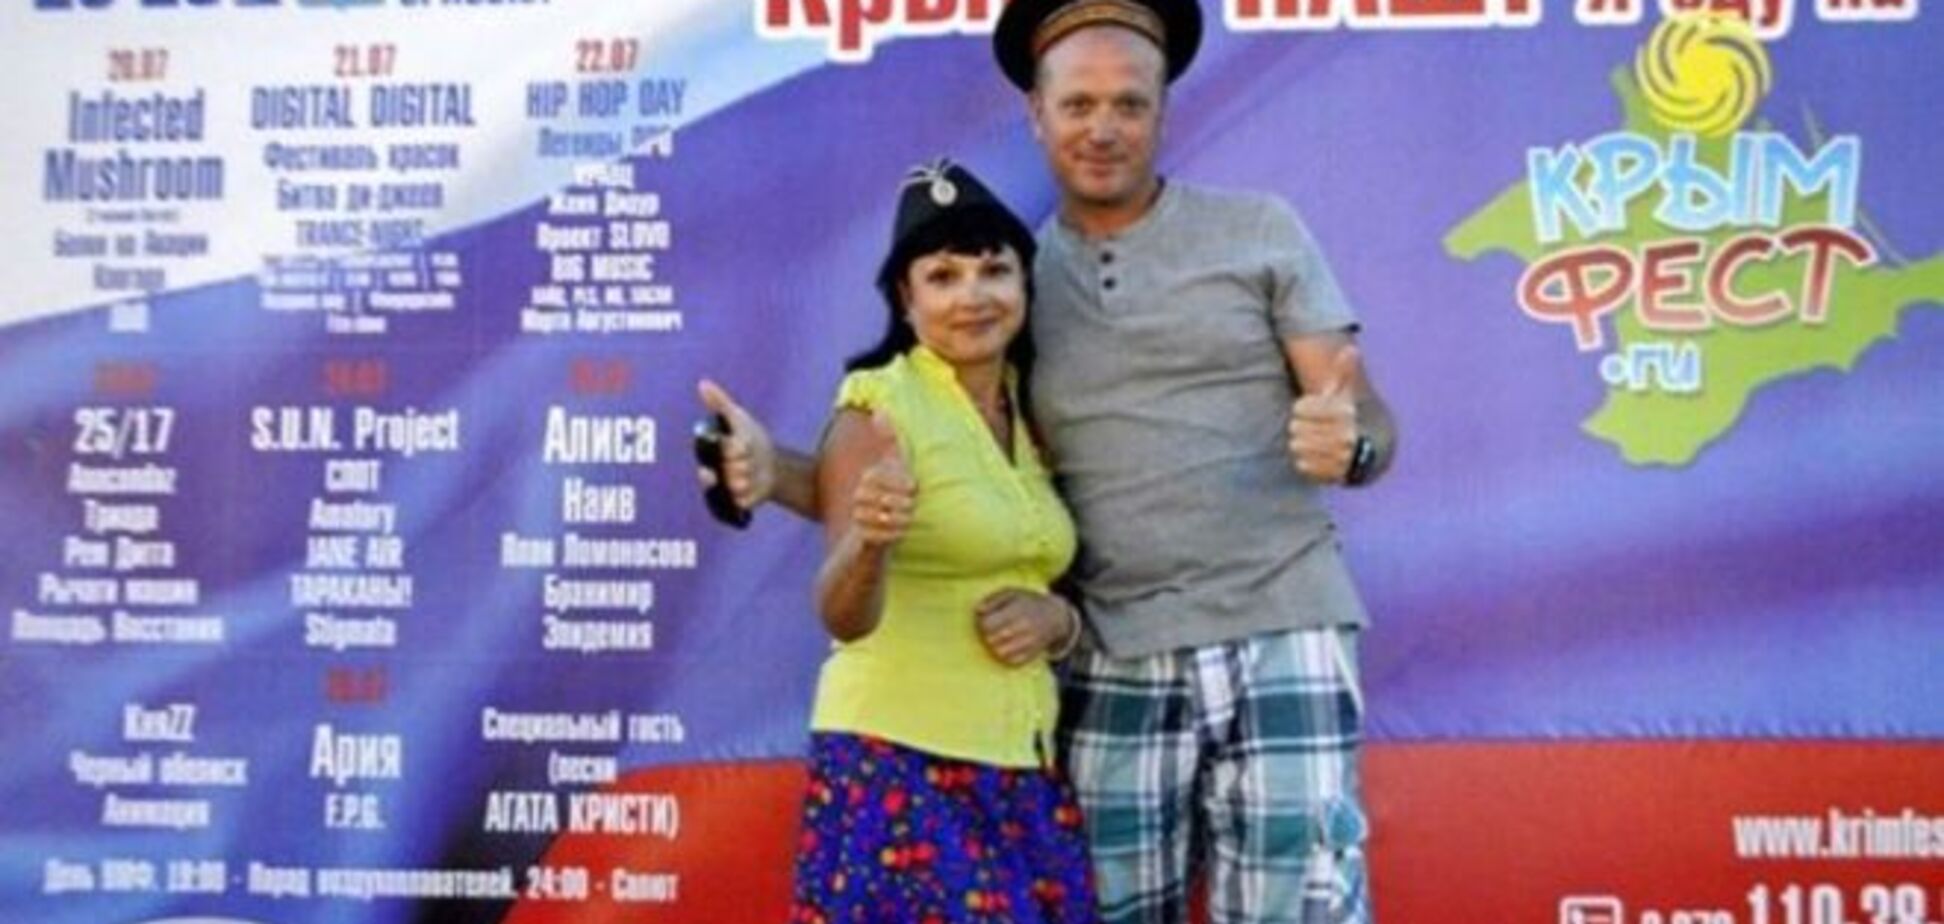 Ни цирка, ни клоунов. Фестиваль в Крыму отменили из-за отсутствия туристов